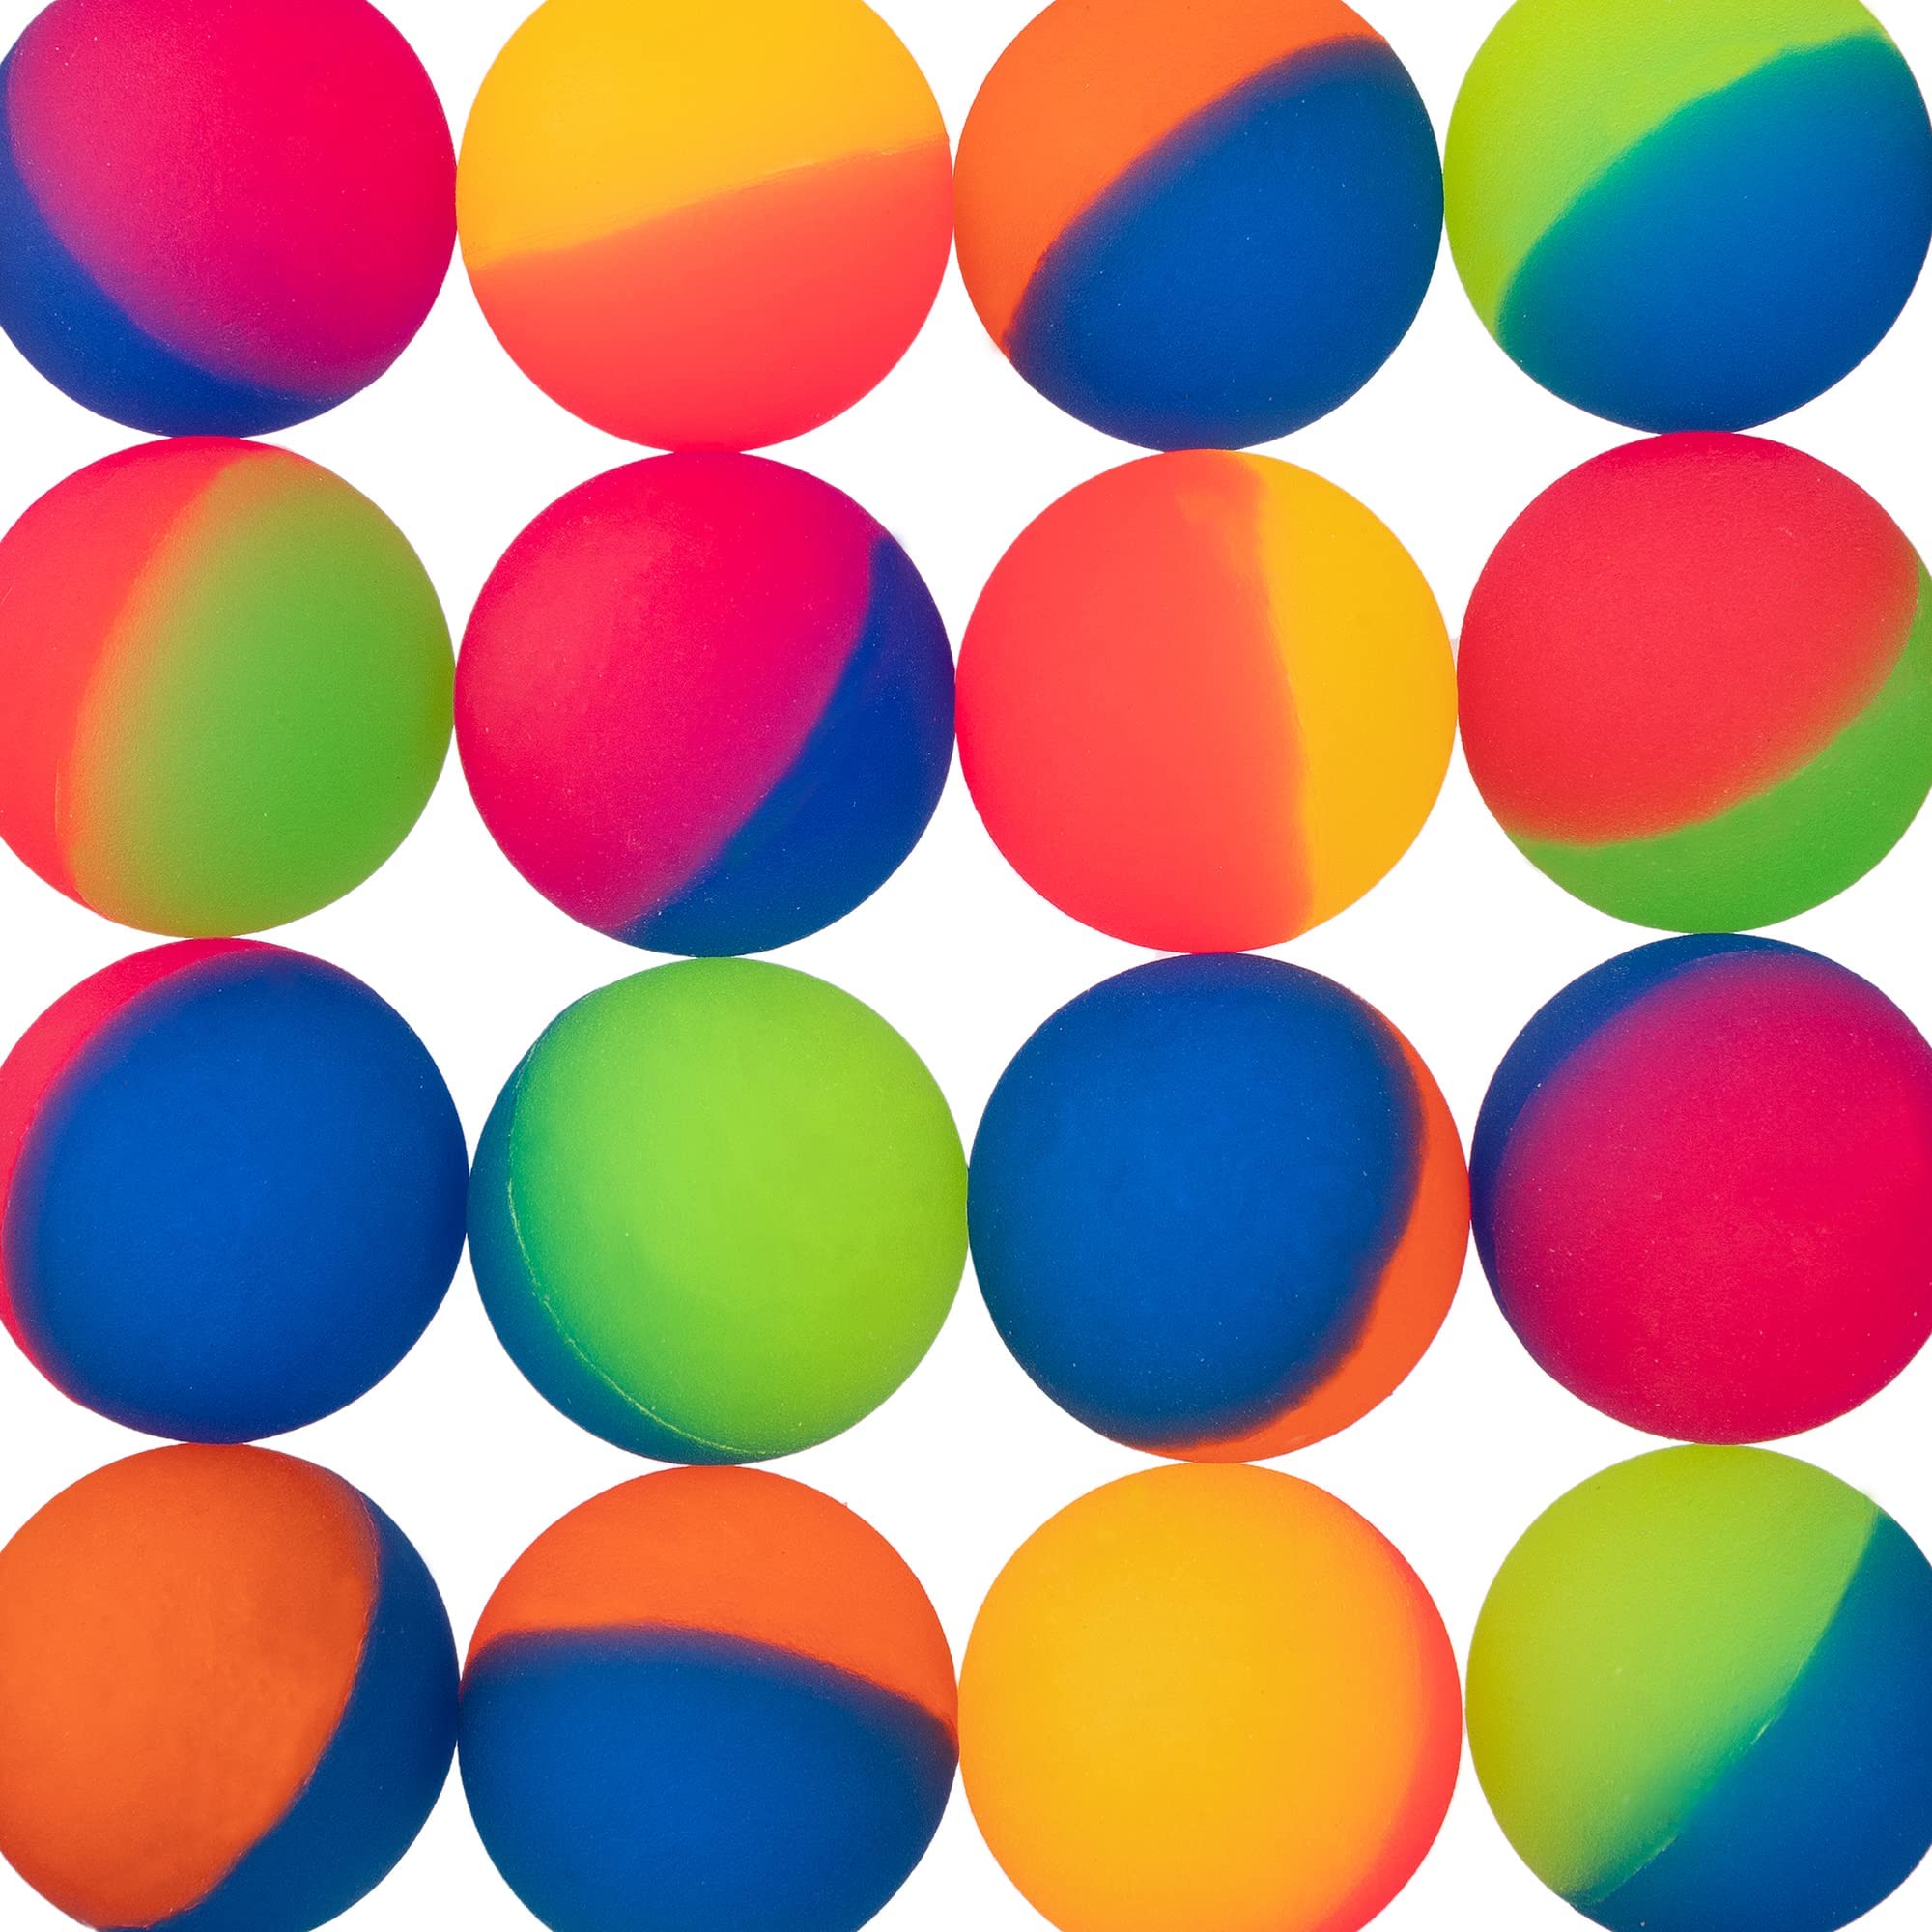 bouncy balls rubber